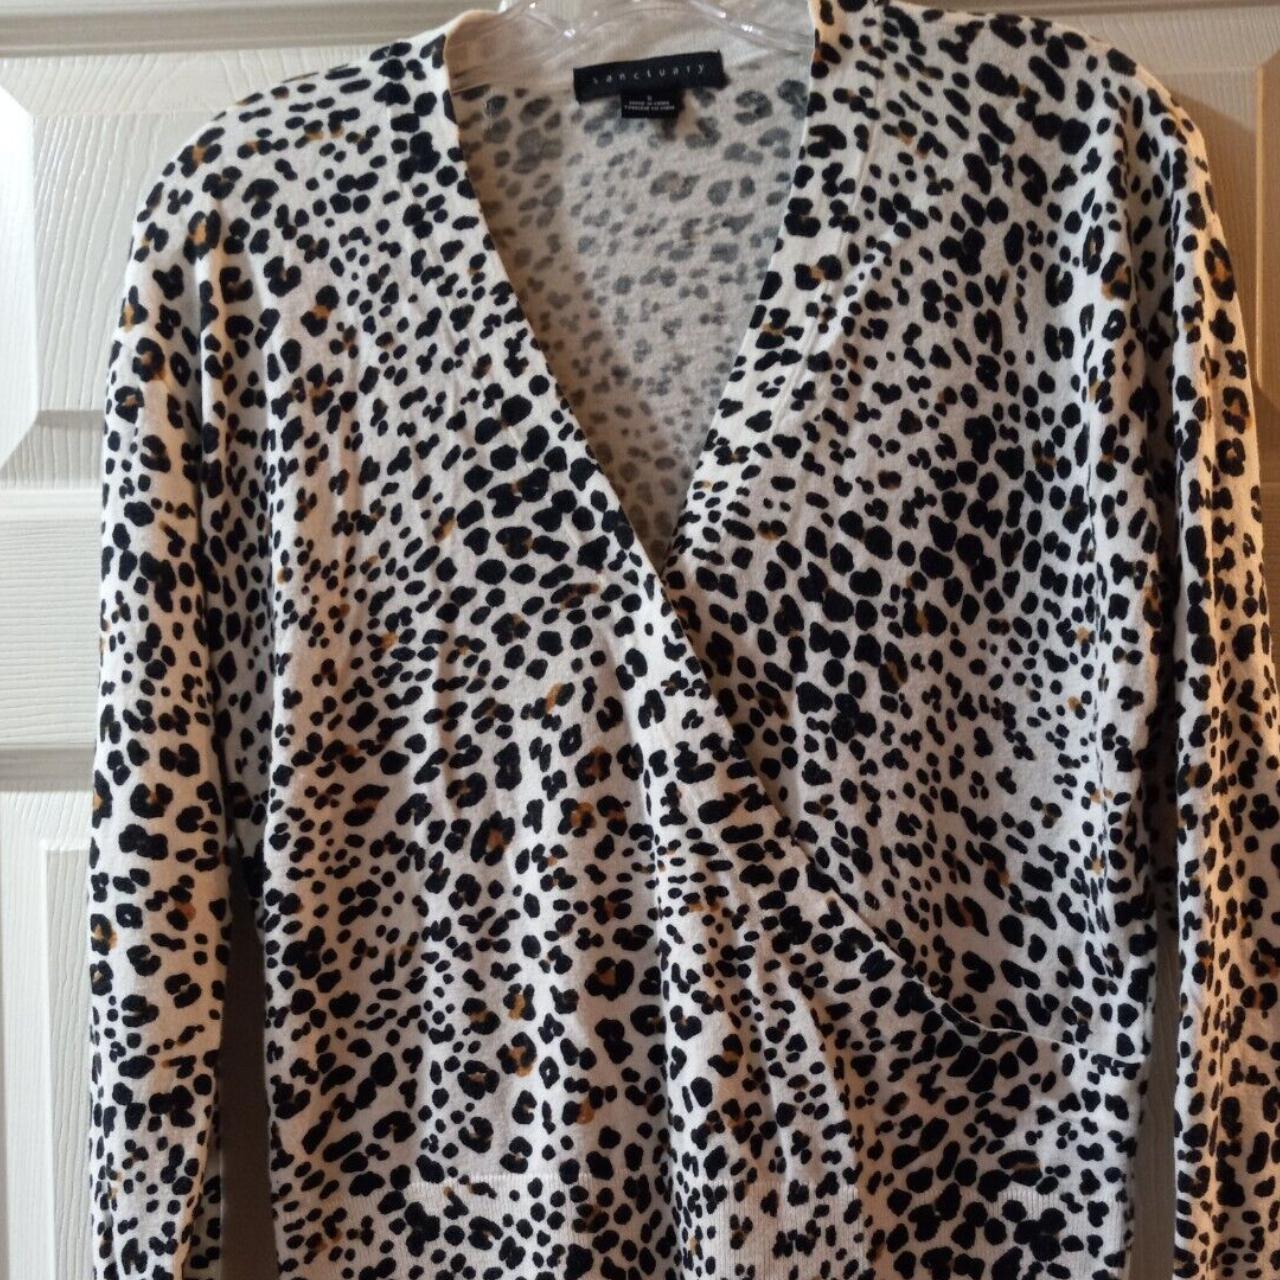 Sanctuary Women Leopard Animal Print Top Shirt Size... - Depop